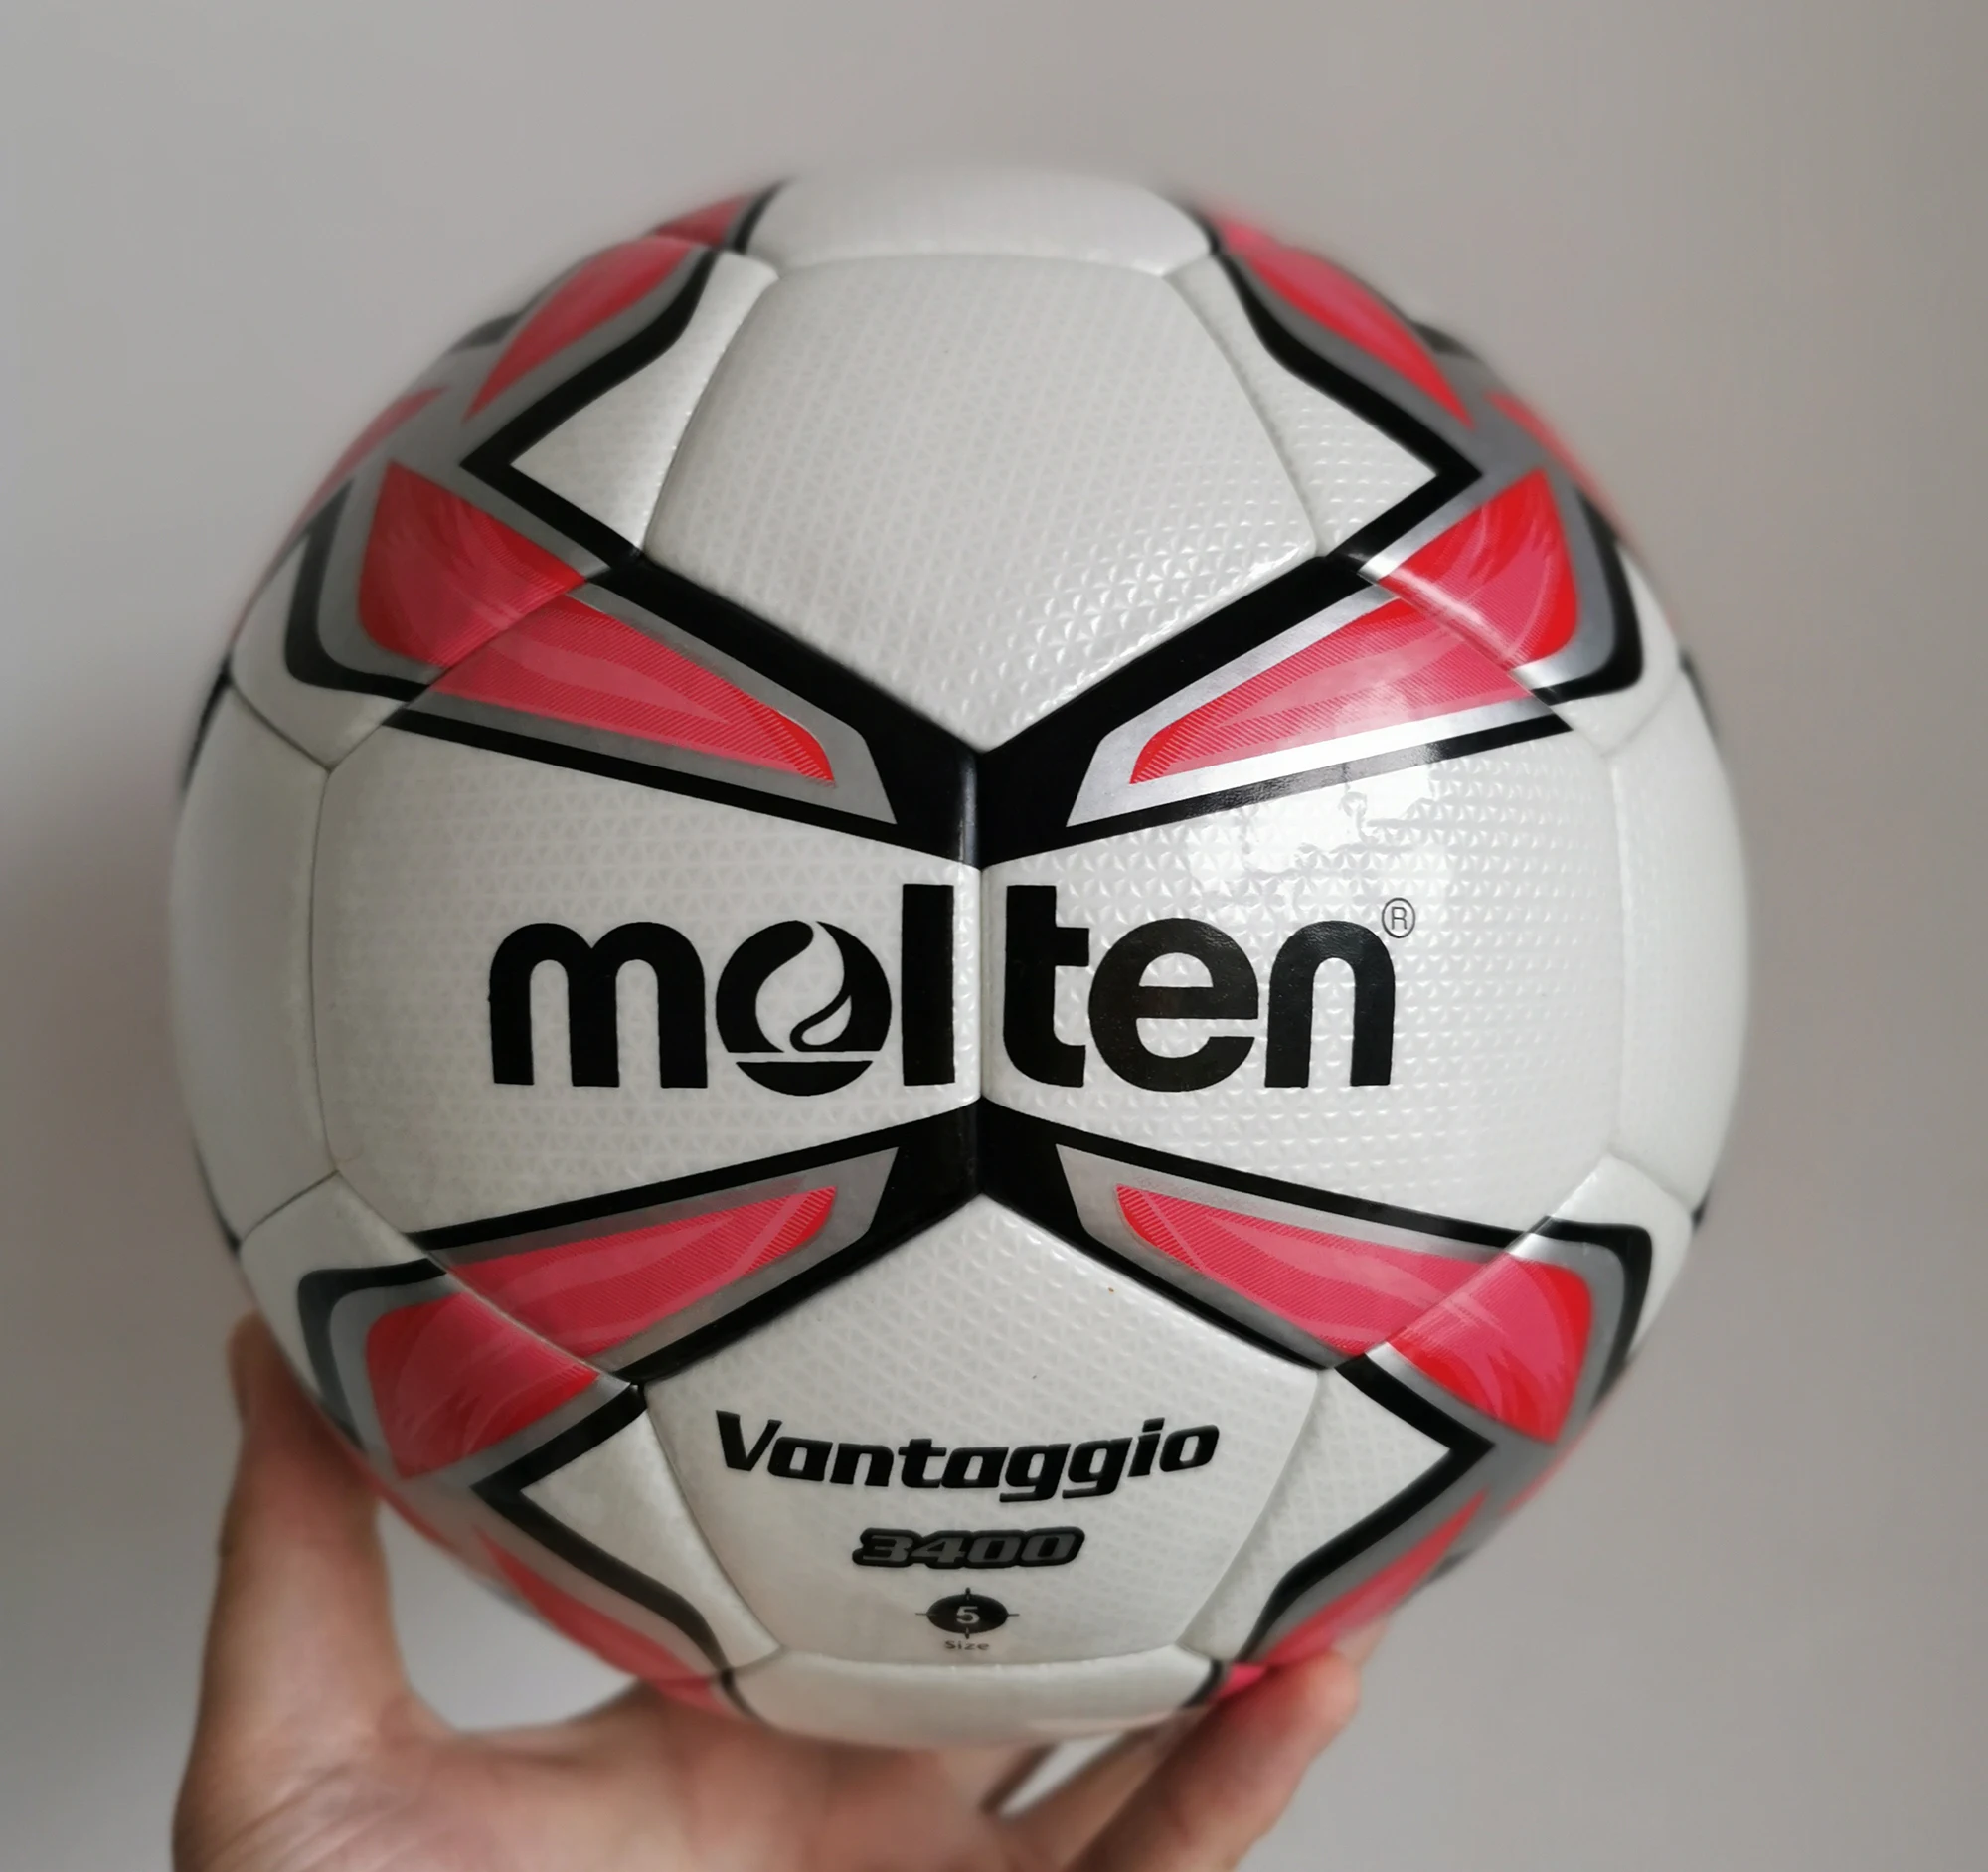 Balón Fútbol #4 Molten Goal Maker – Productos Superiores, S. A. (SUPRO)